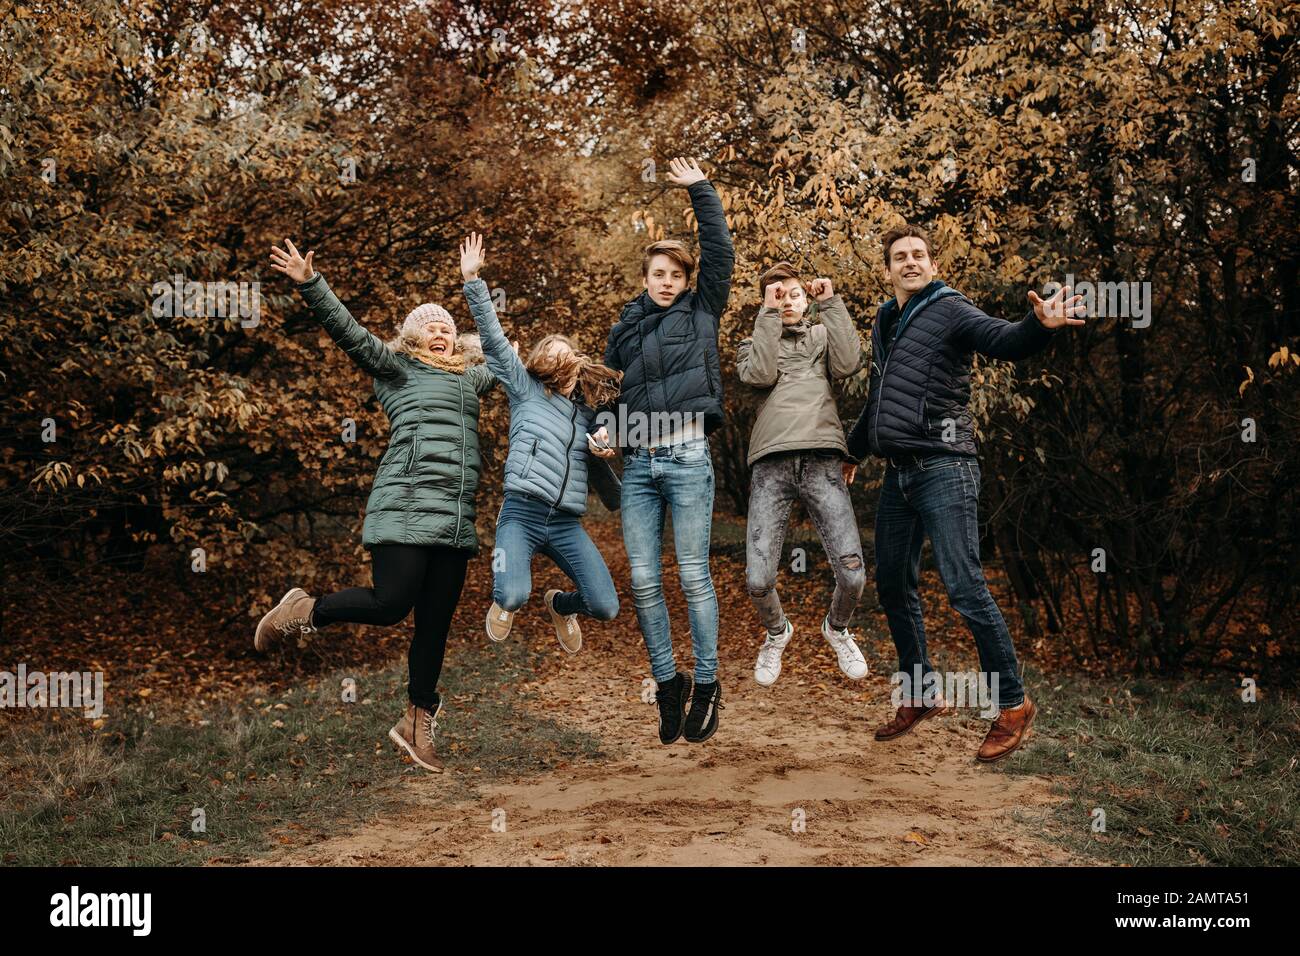 Ritratto di una famiglia che salta in aria nel paesaggio rurale, Paesi Bassi Foto Stock